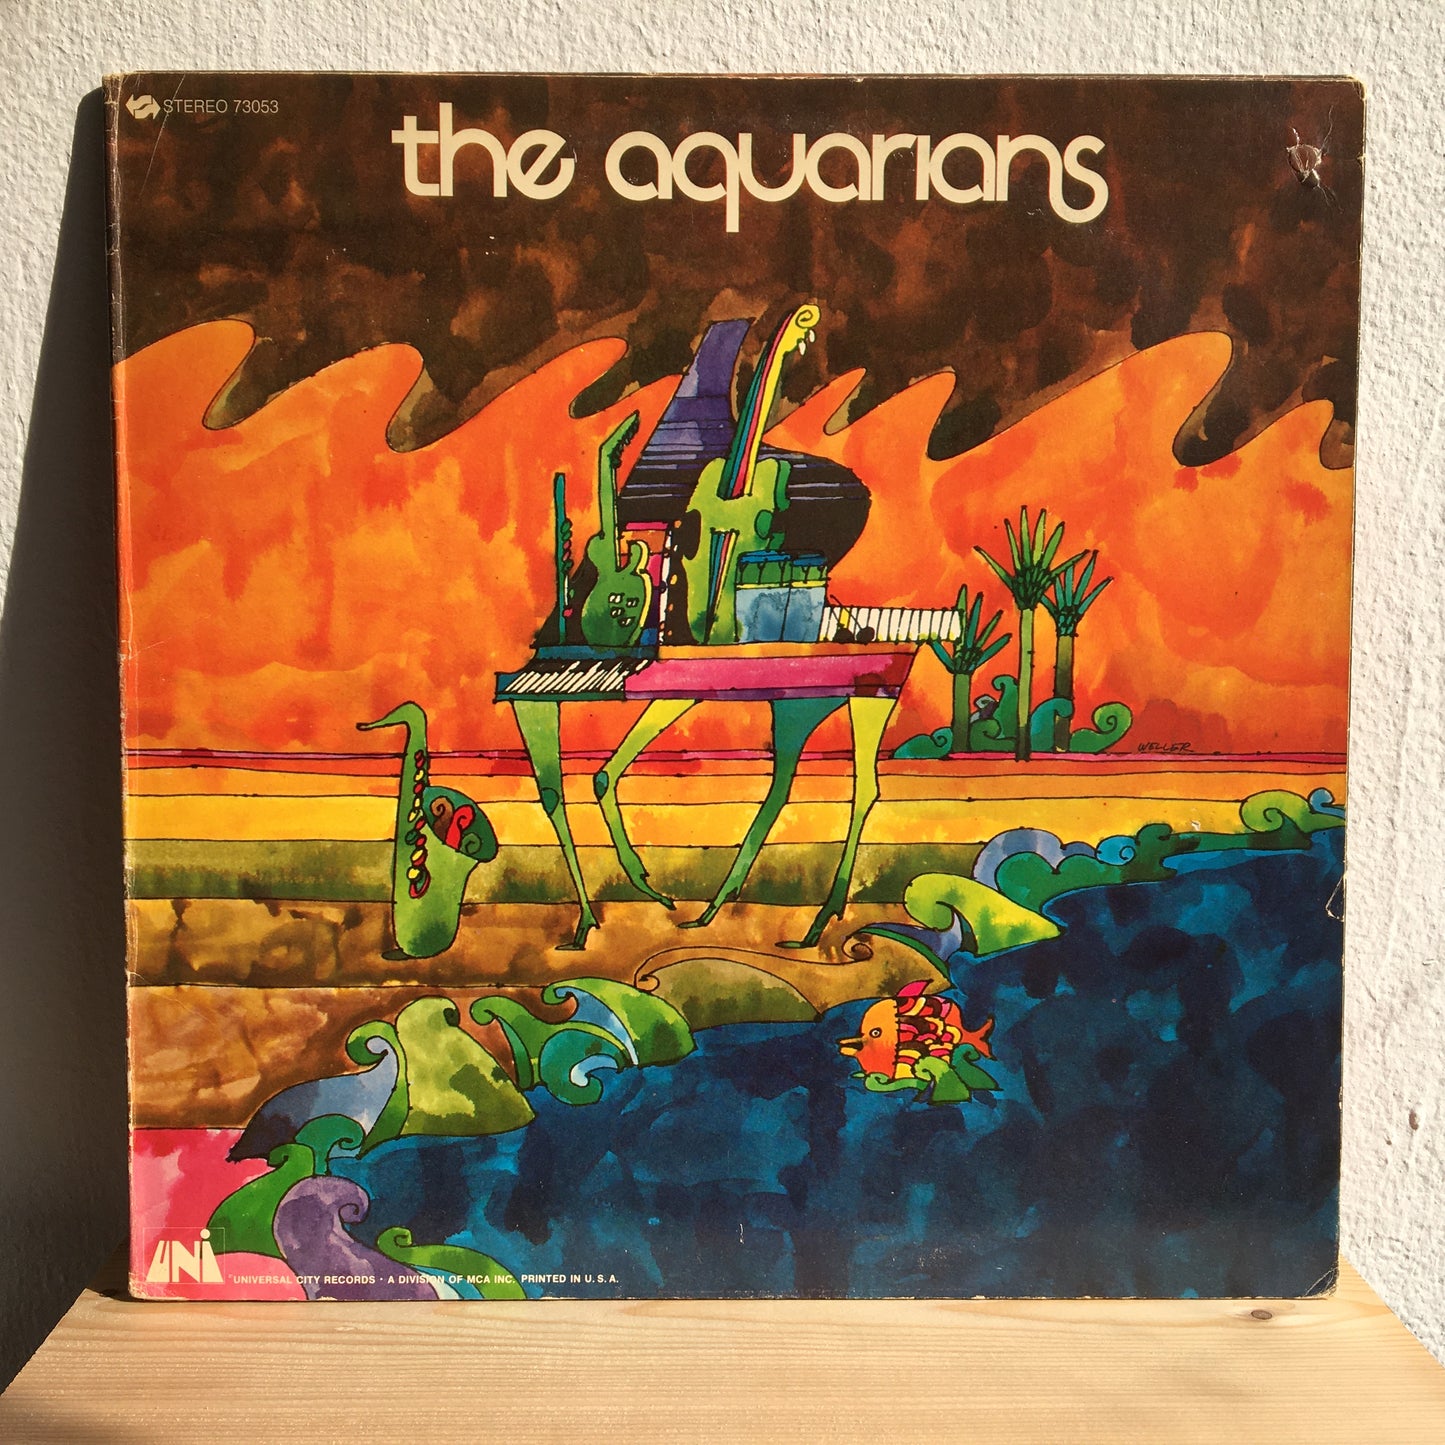 The Aquarians – Jungle Grass